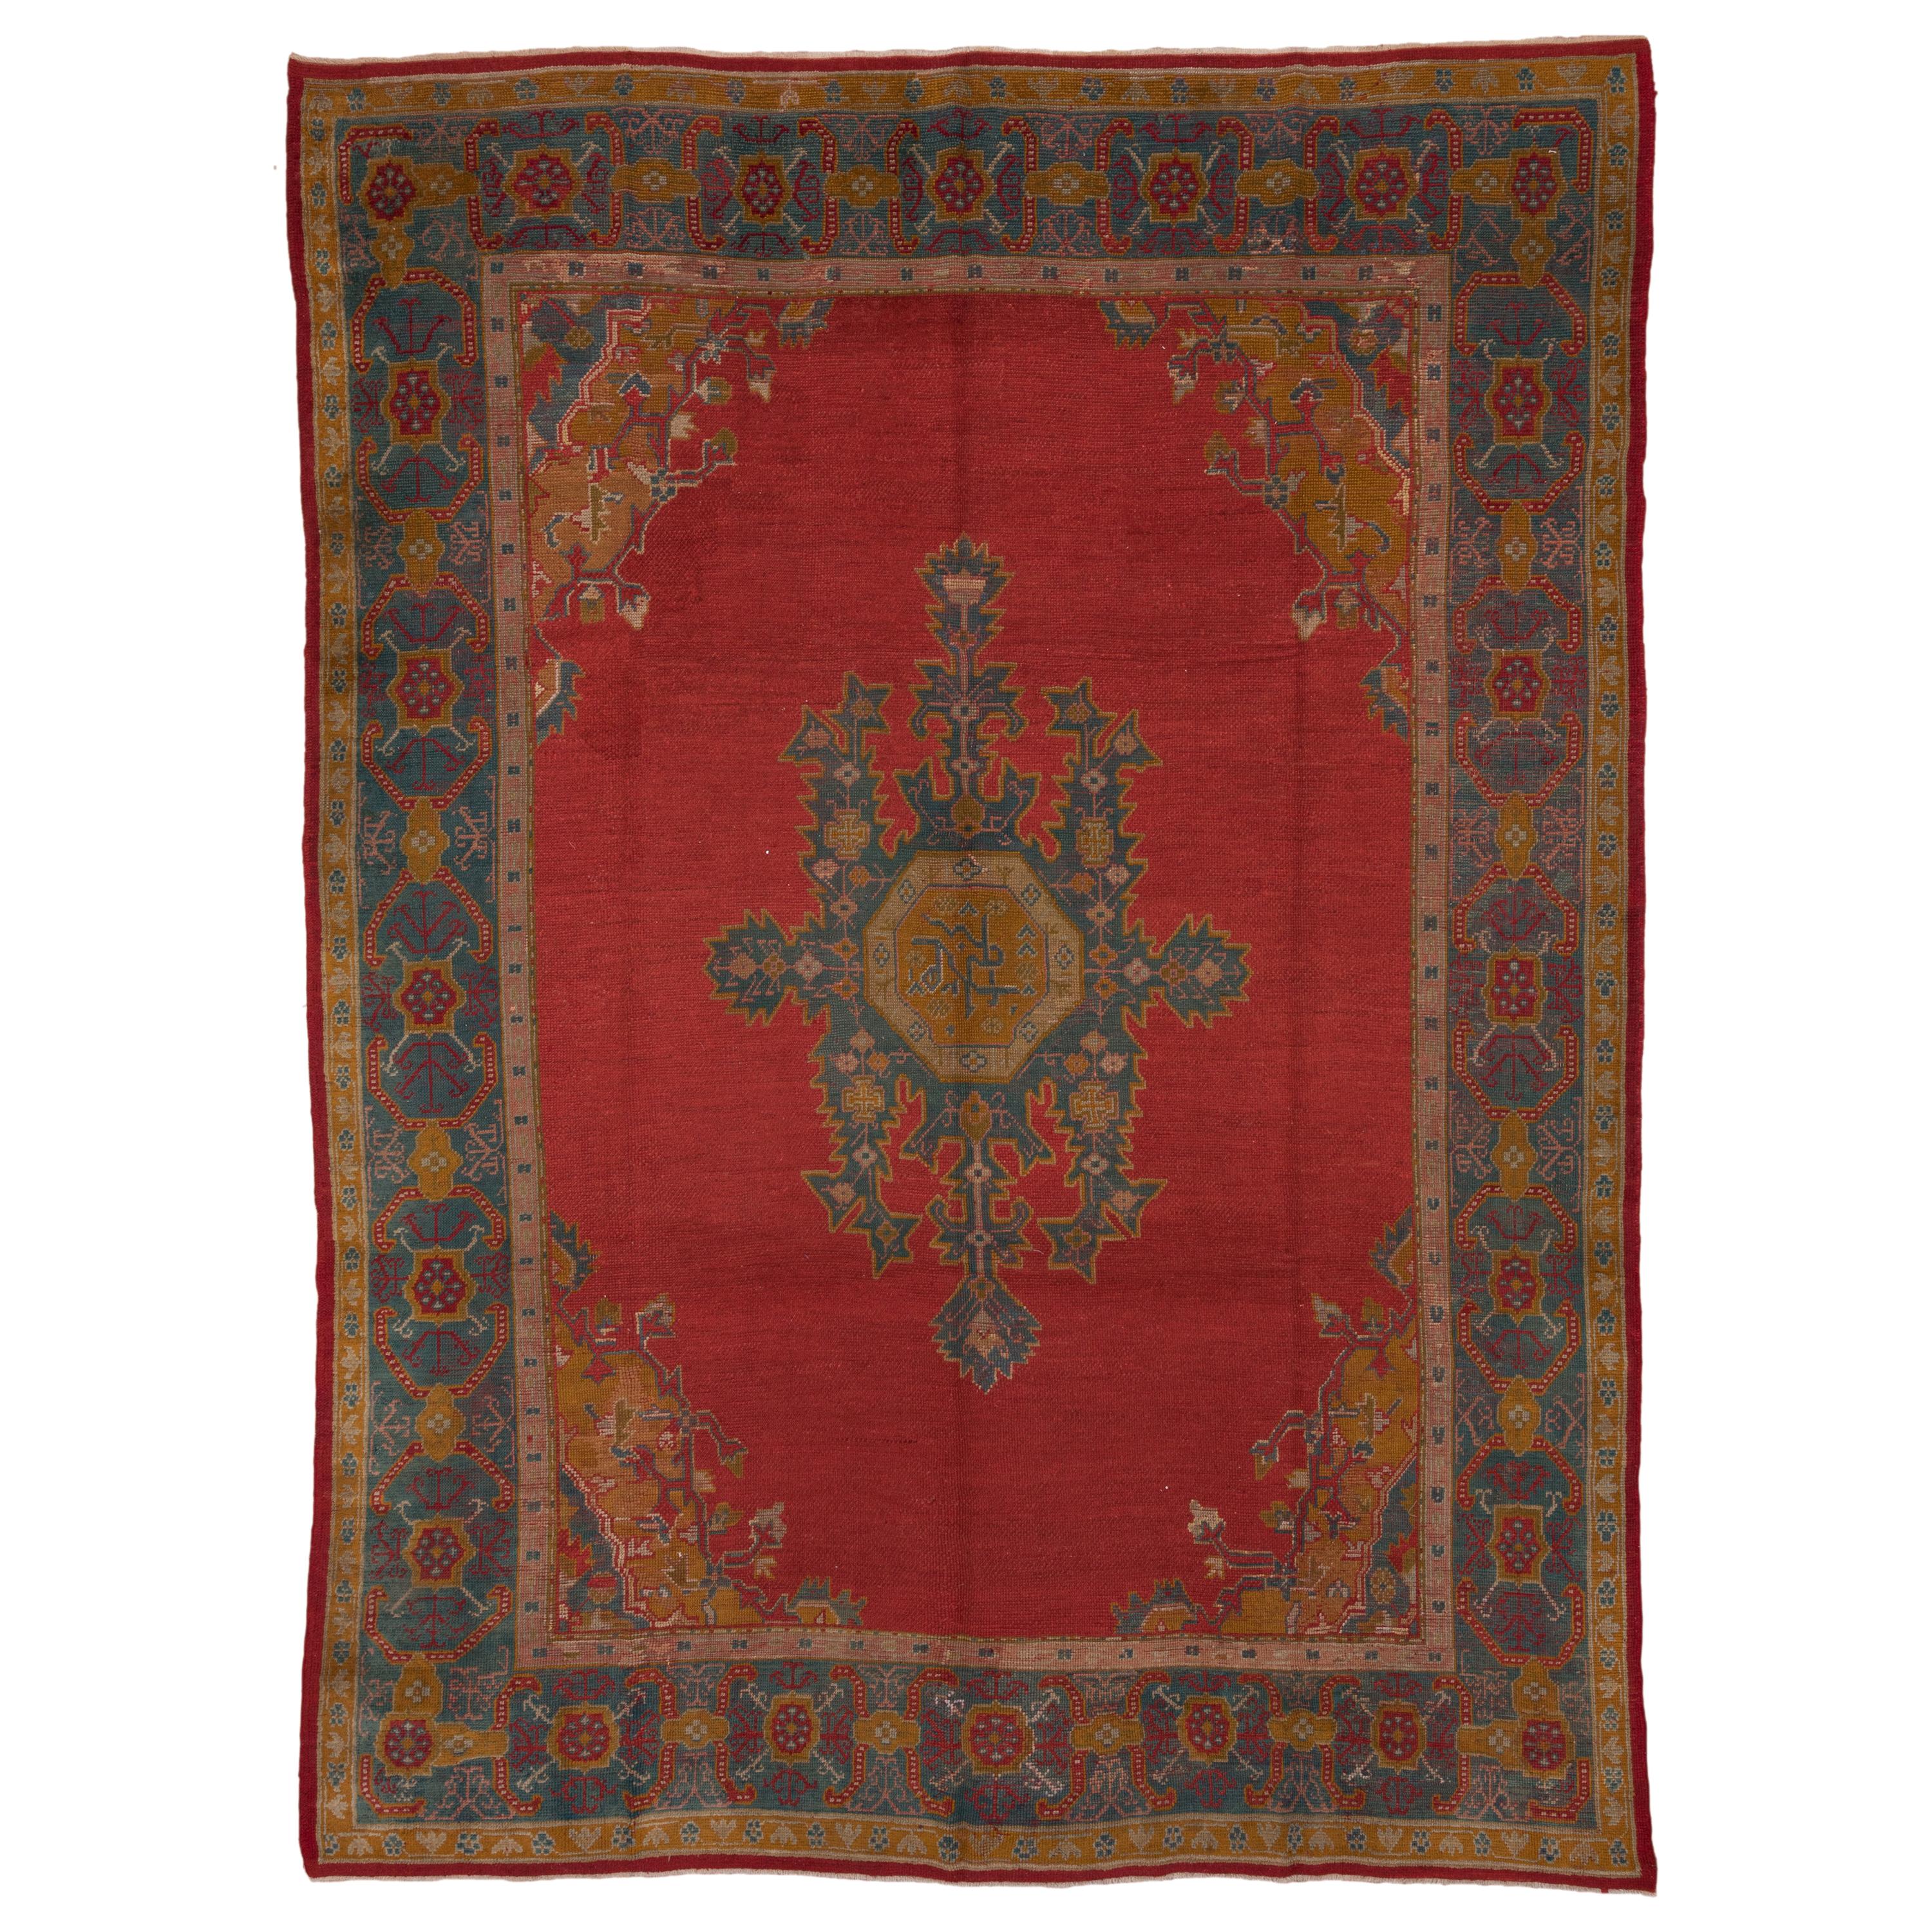 Antique Red Turkish Oushak Carpet